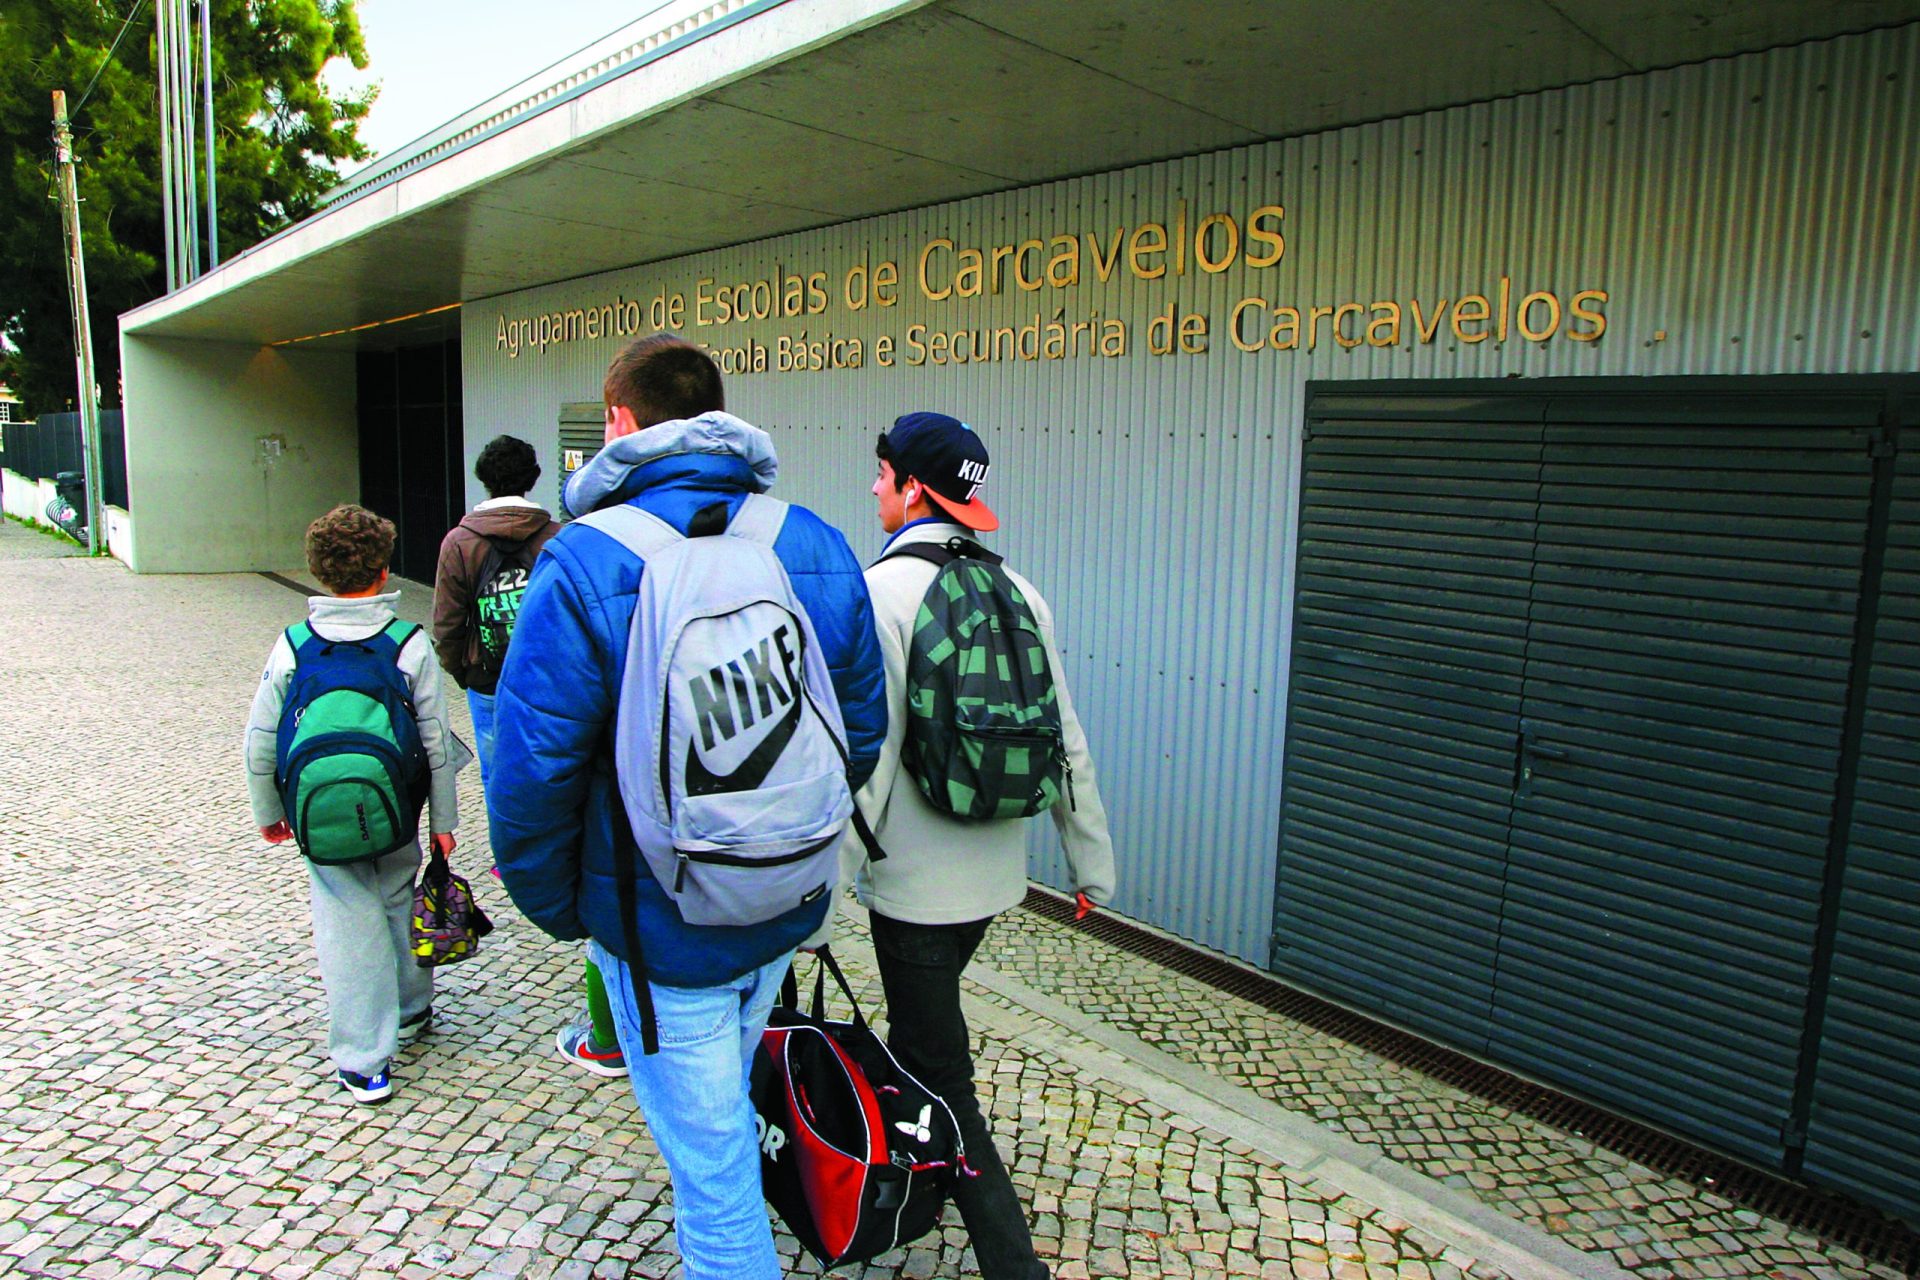 Câmaras de videovigilância das escolas portuguesas voltaram a ser ligadas